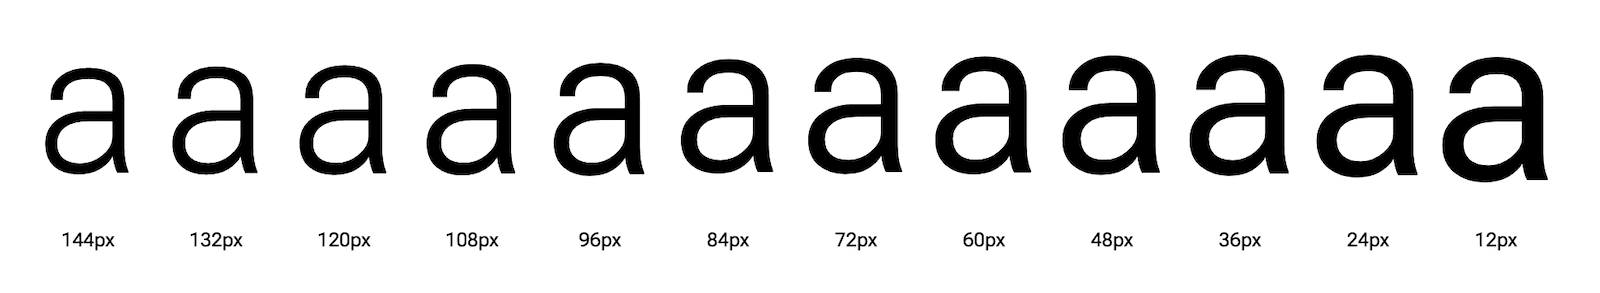 顯示不同光學大小的字母「a」